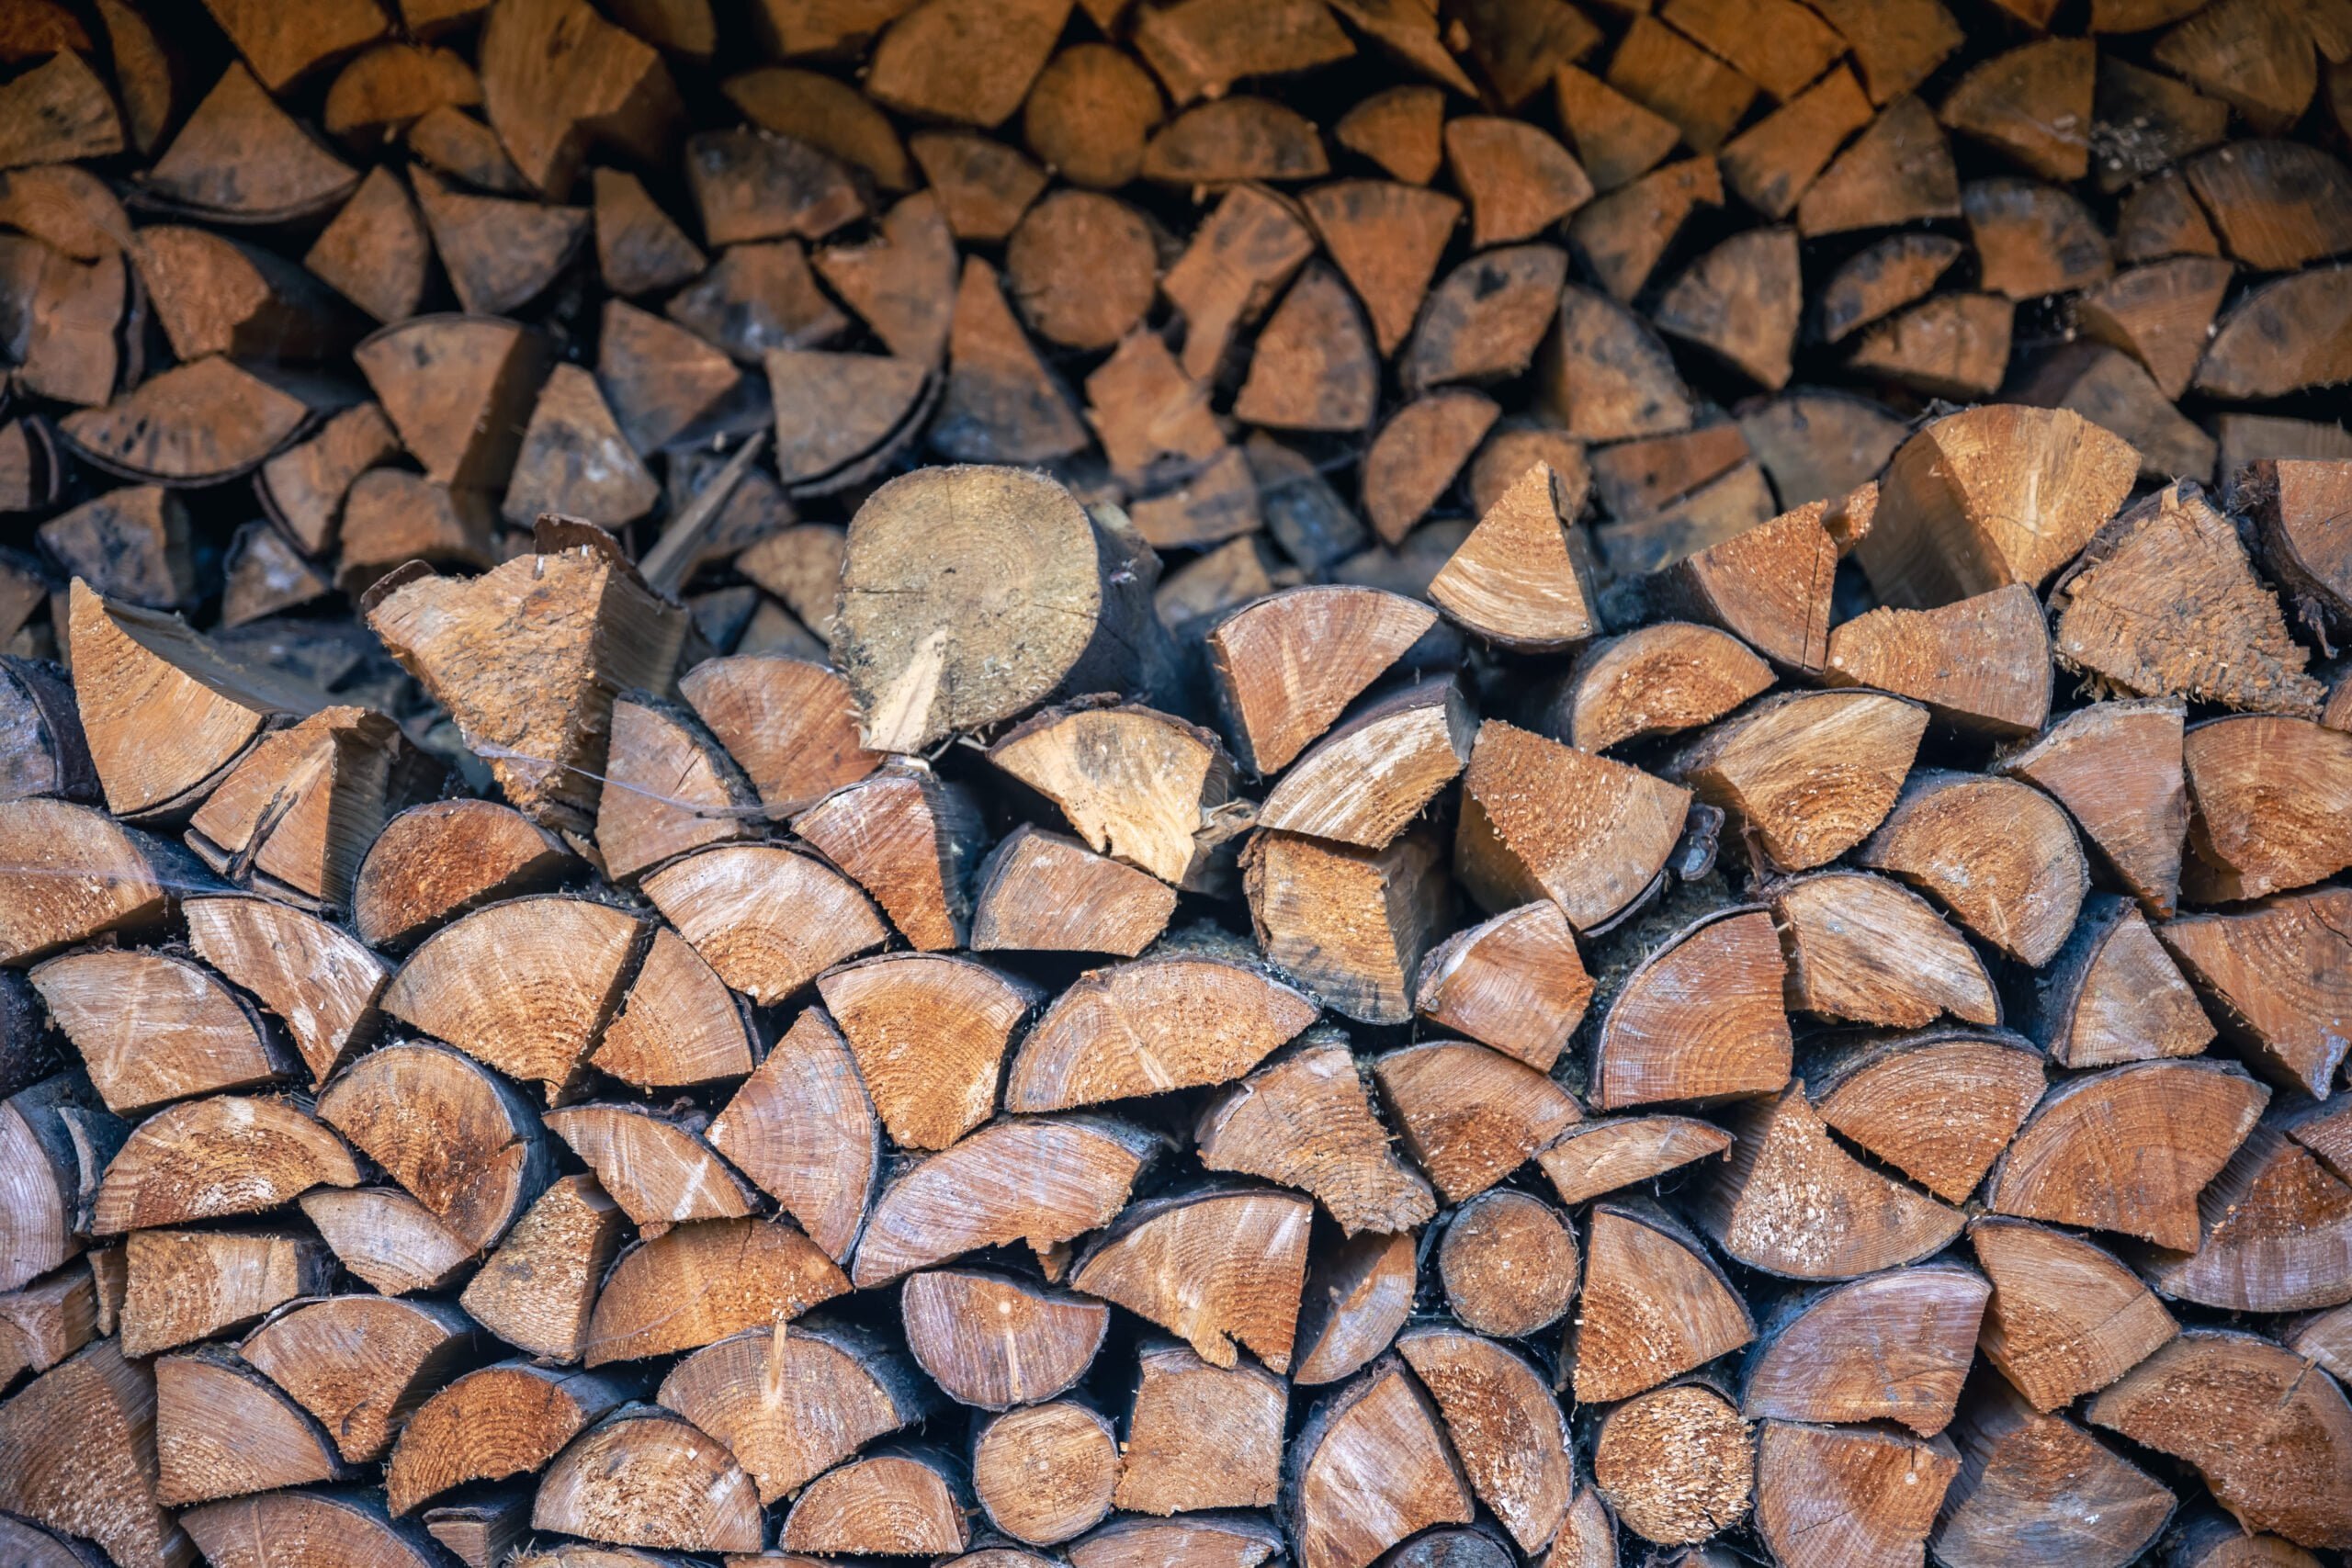 Besser heizen mit gut gelagertem Holz! Erfahren Sie mehr über optimale Brennholzlagerung und kreative Lagerlösungen.- Wohntrends Magazin